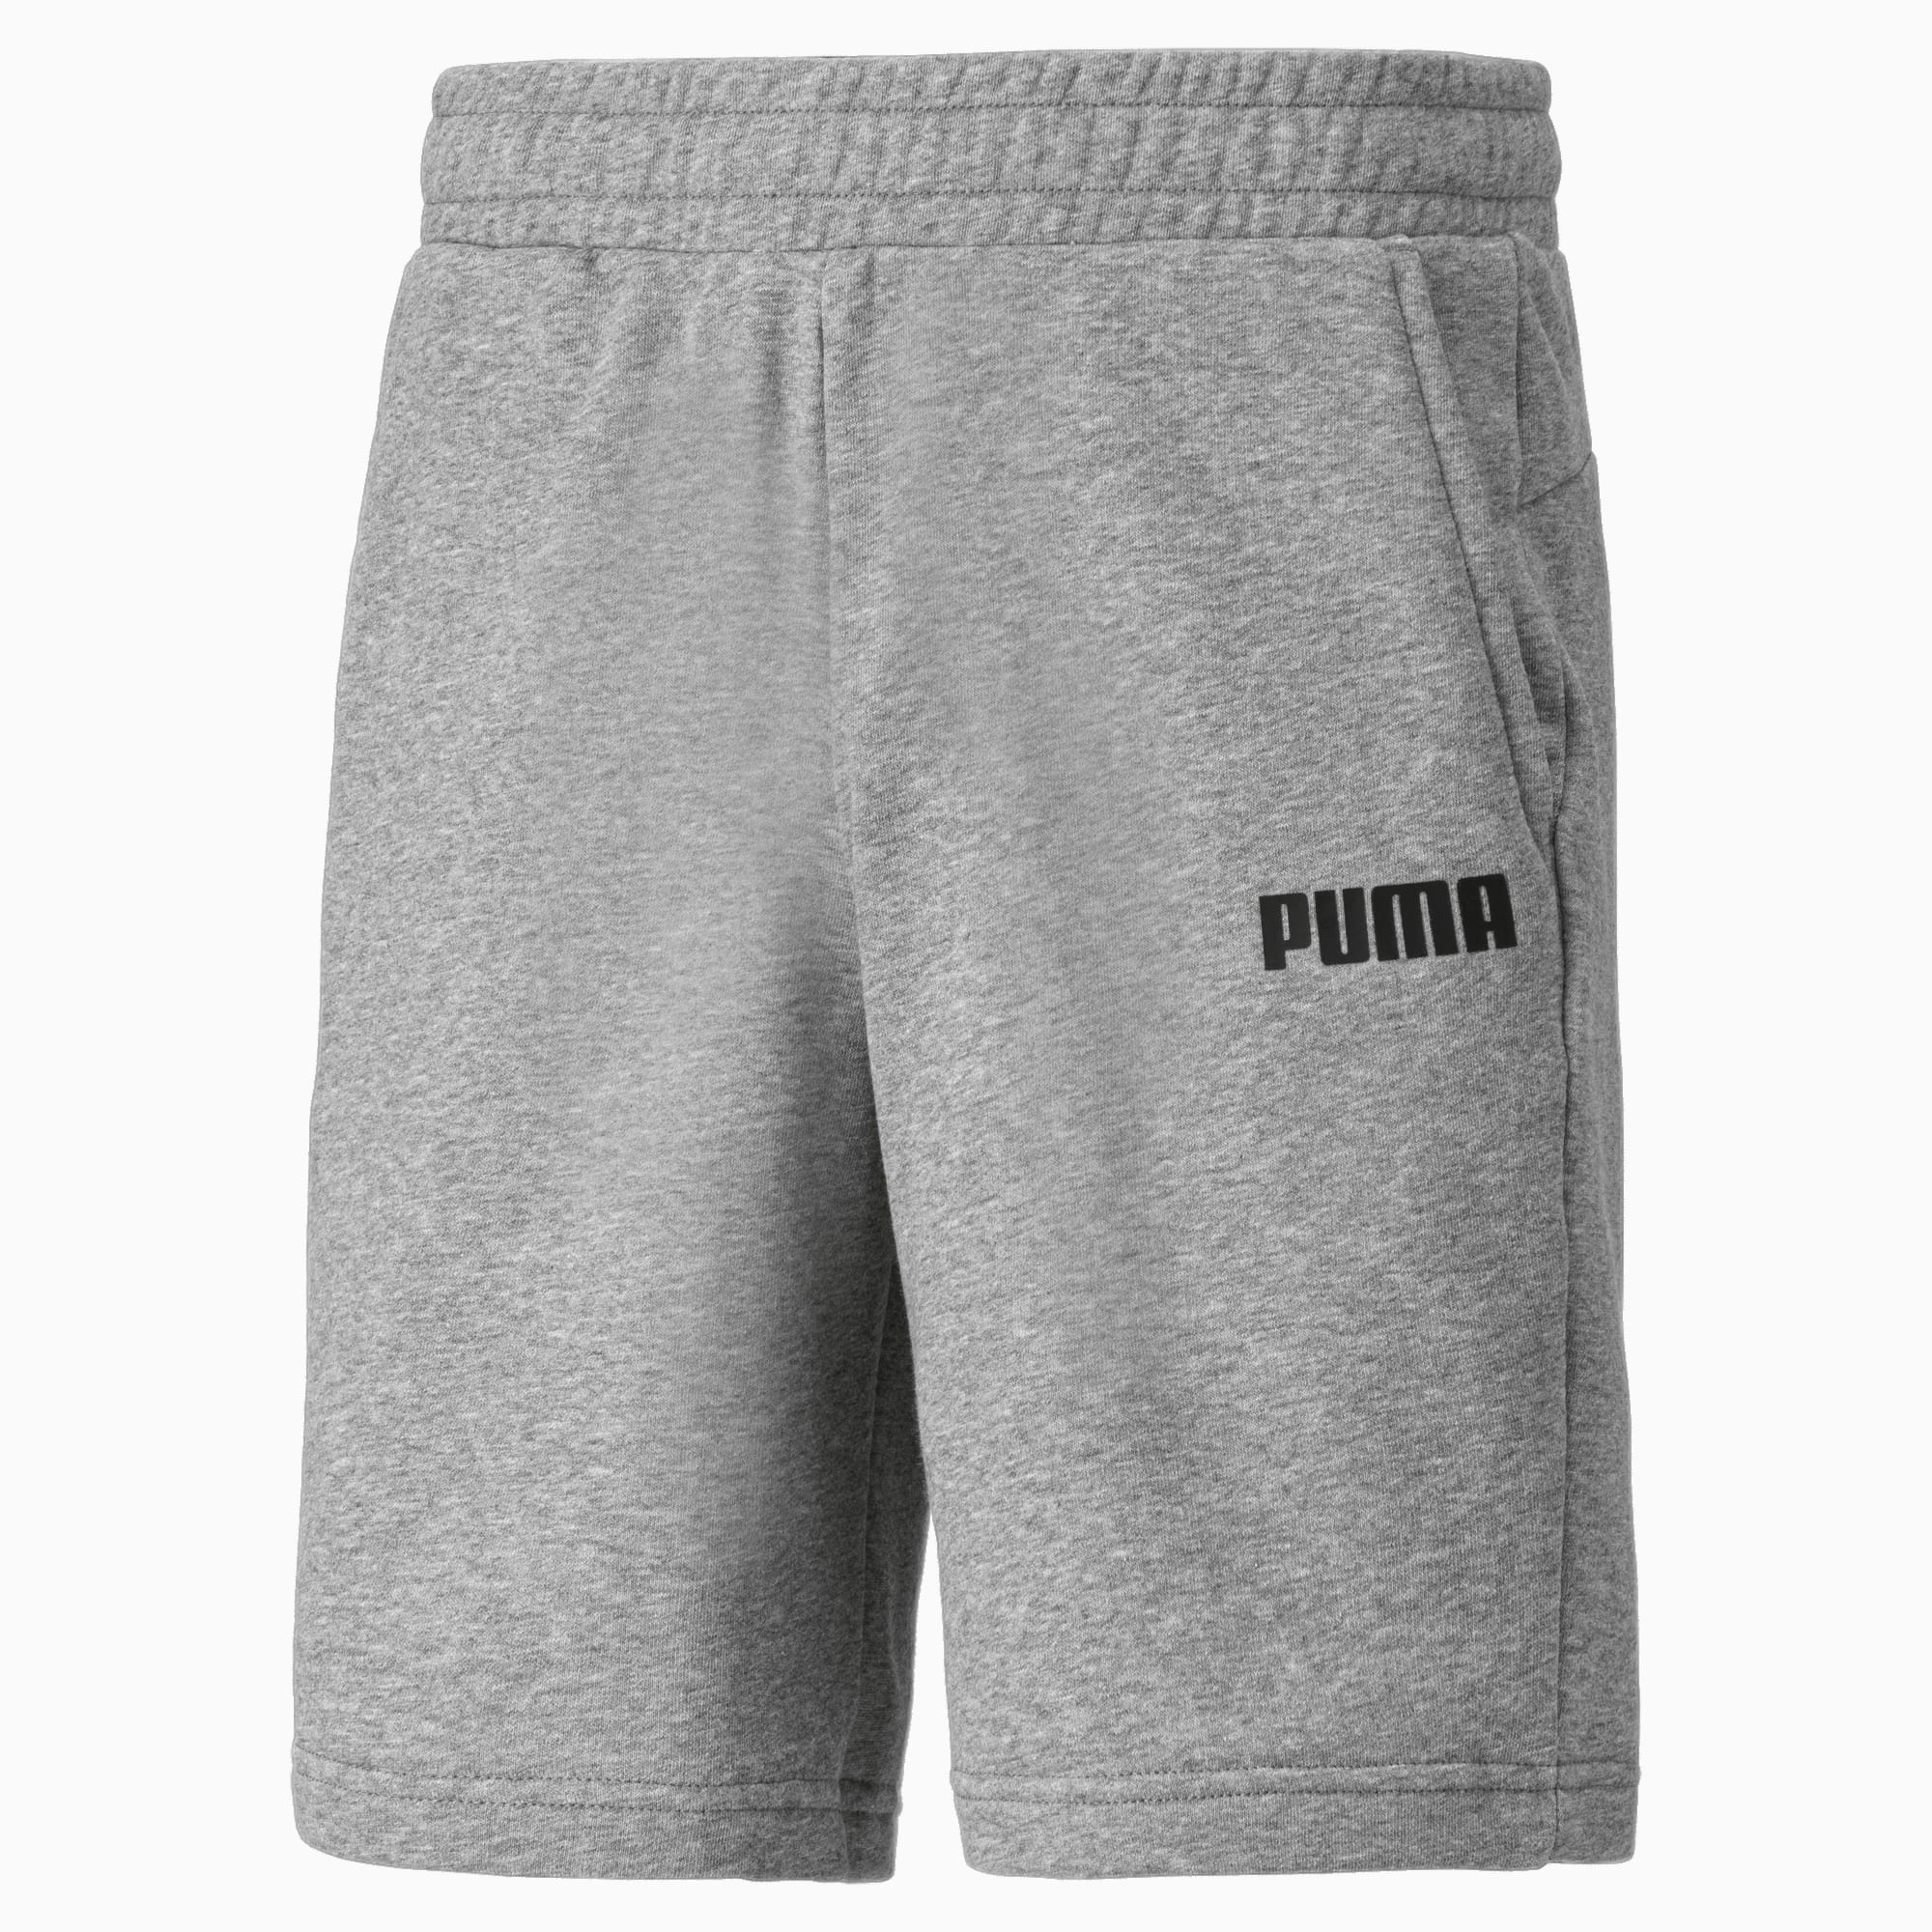 puma jersey shorts